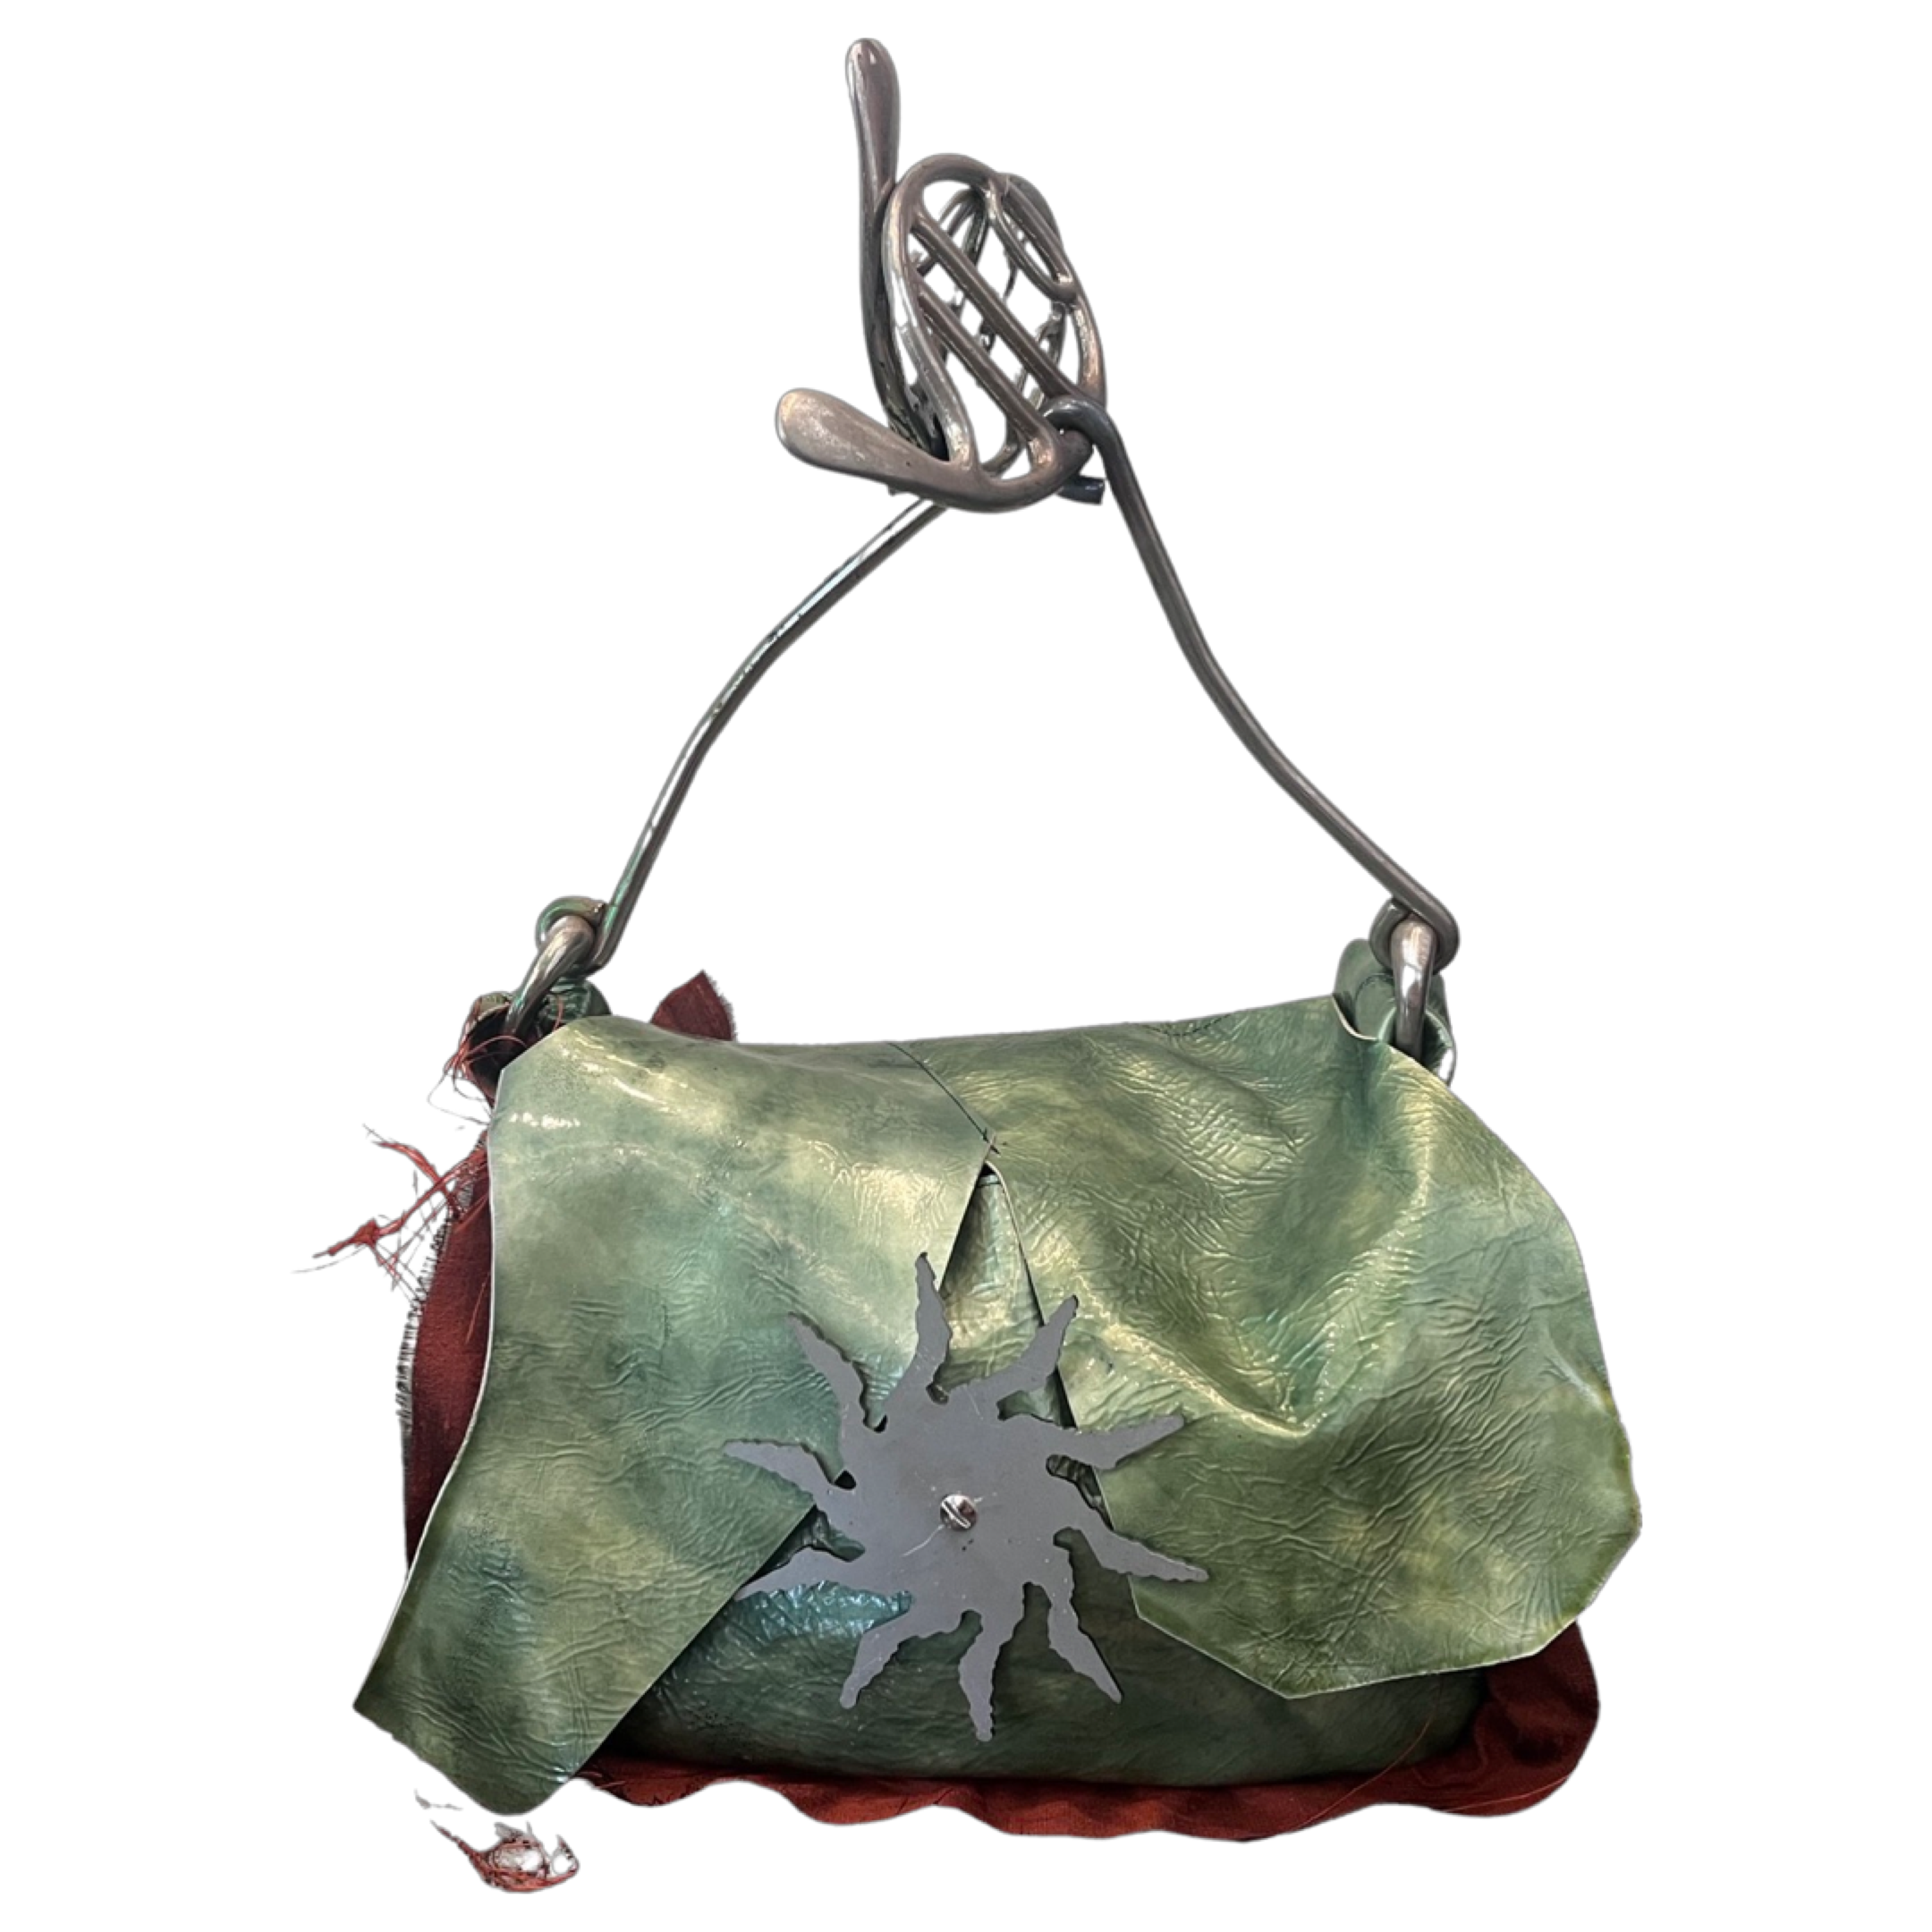 Manola's Bag in Metallic Green